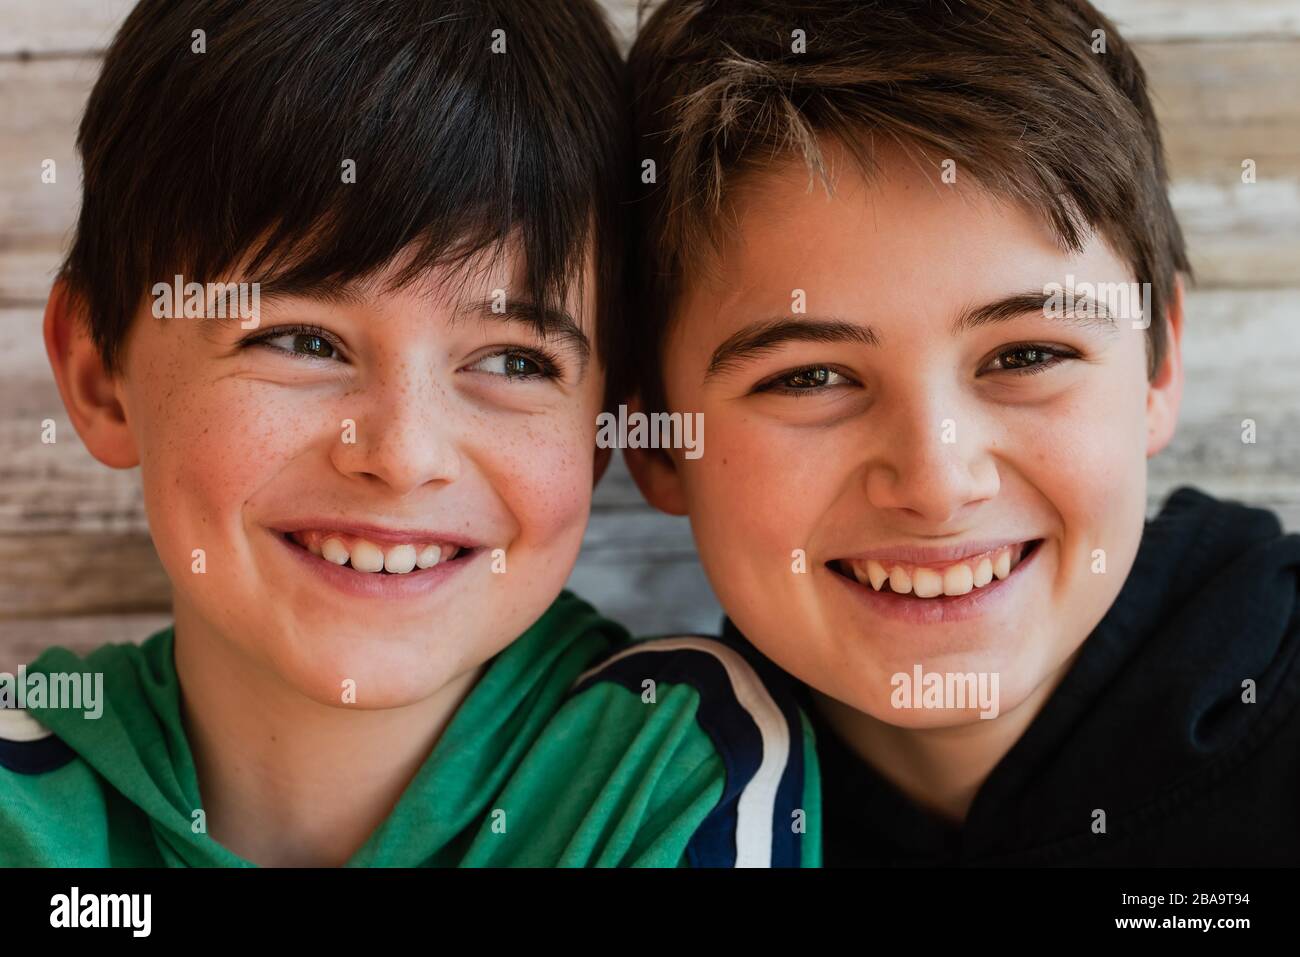 Gros plan de deux garçons souriants, la tête étant proche les uns des autres. Banque D'Images